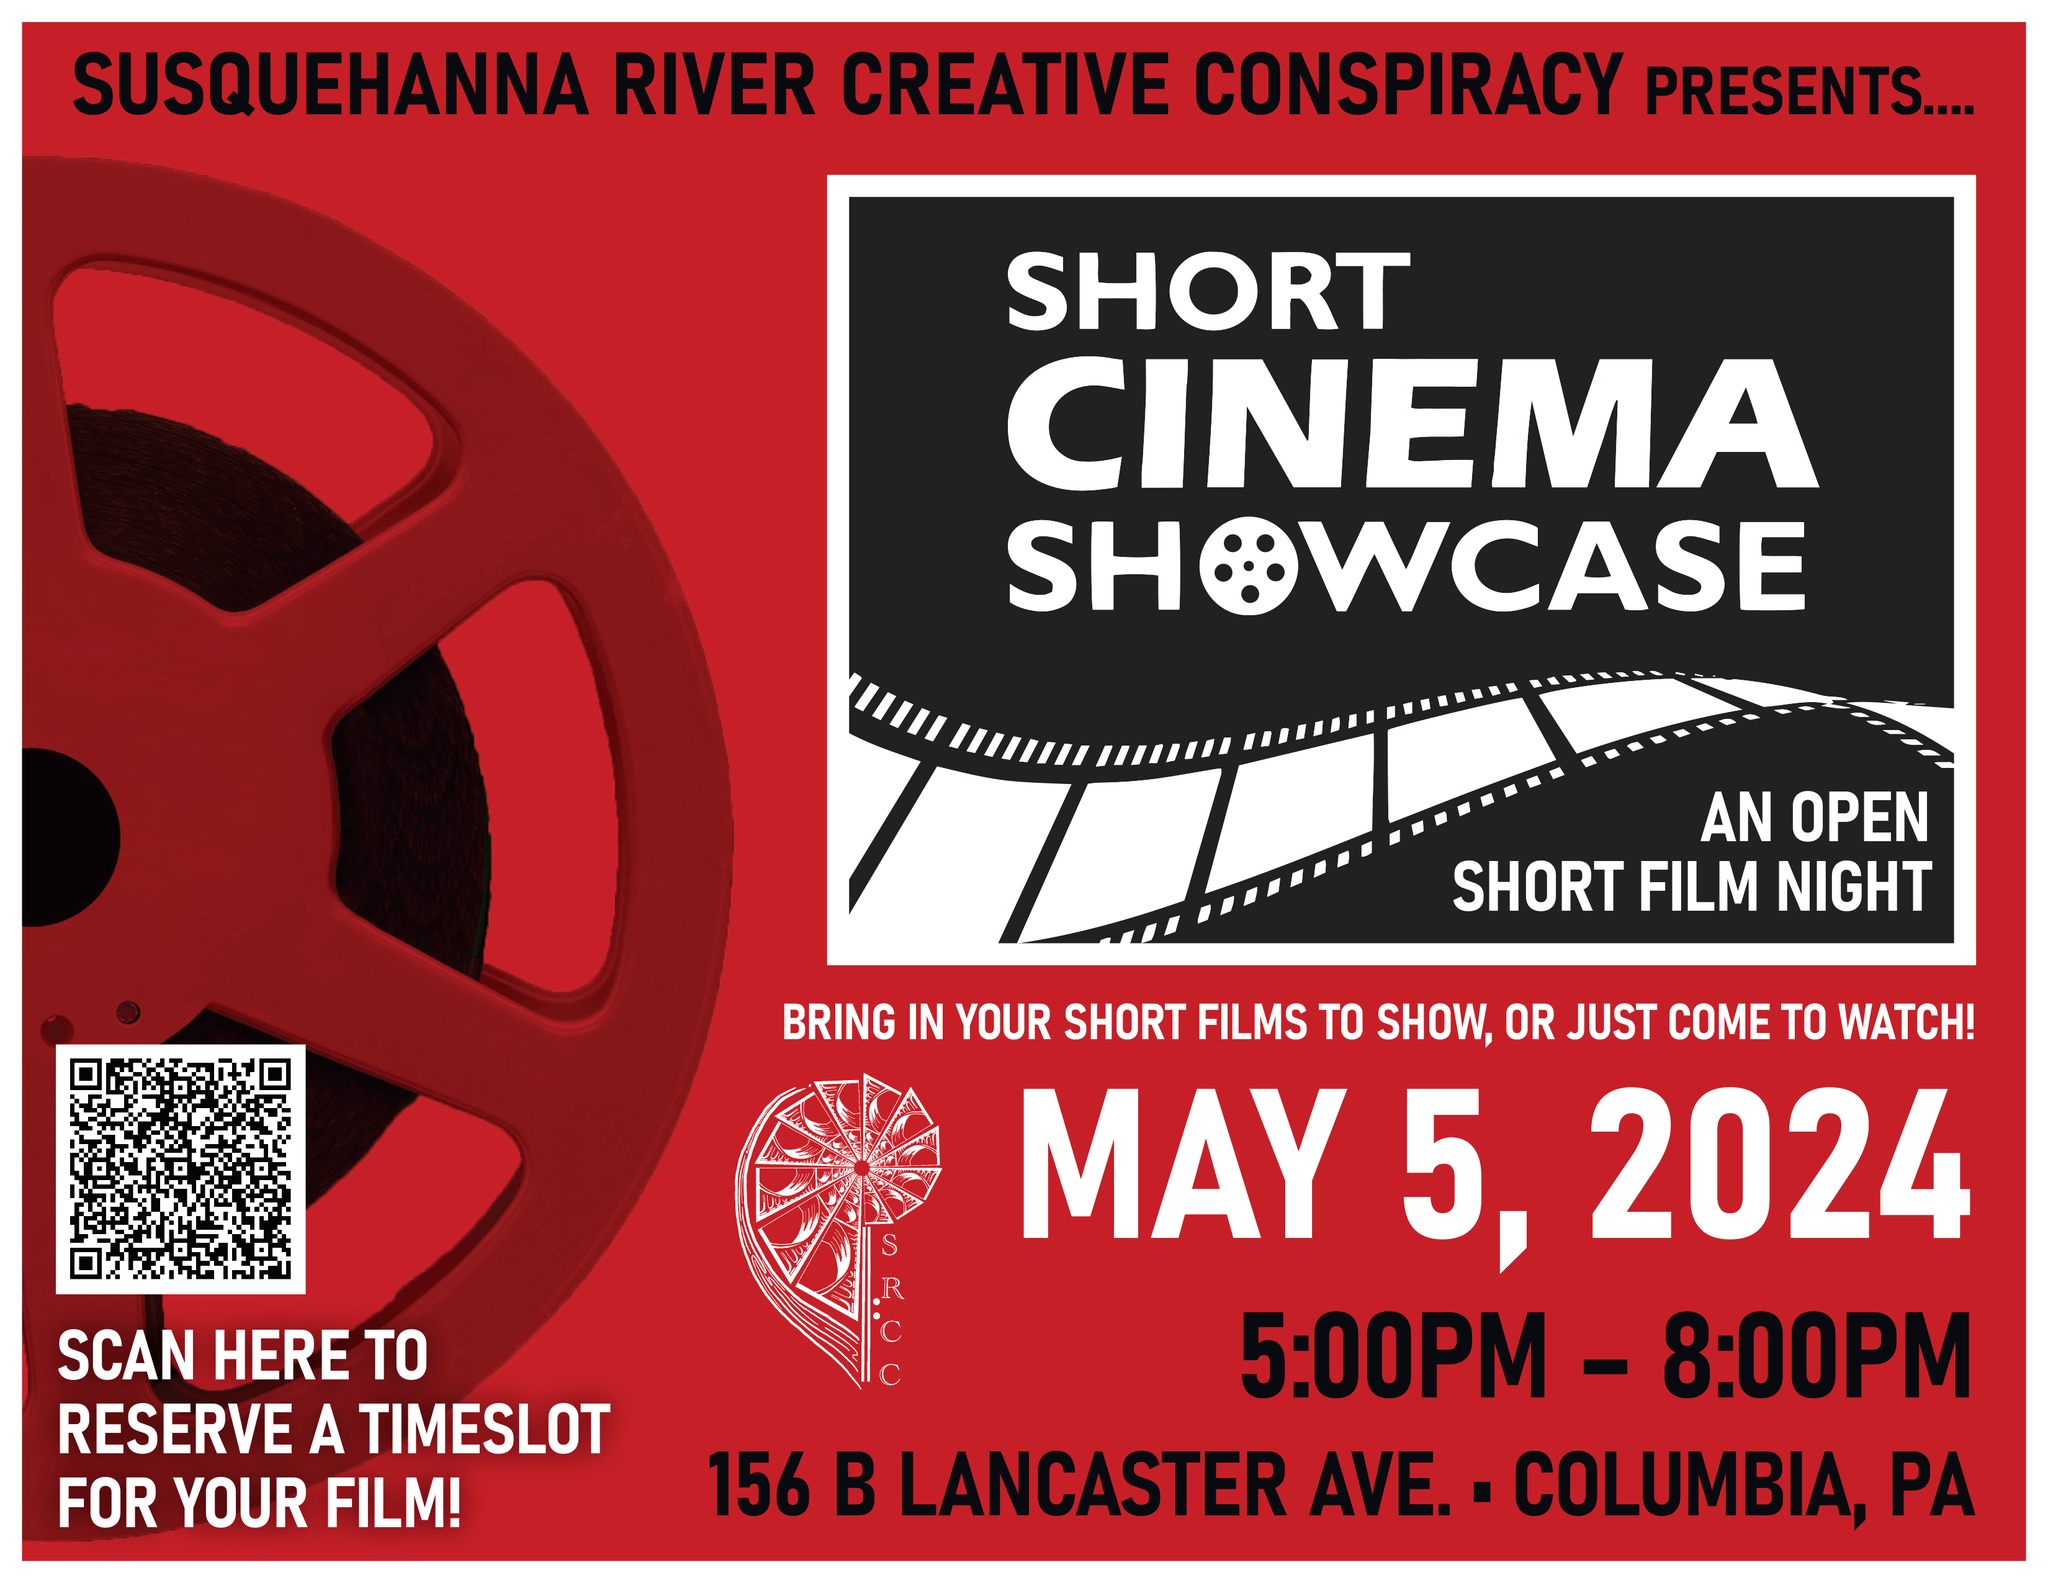 Short Cinema Showcase